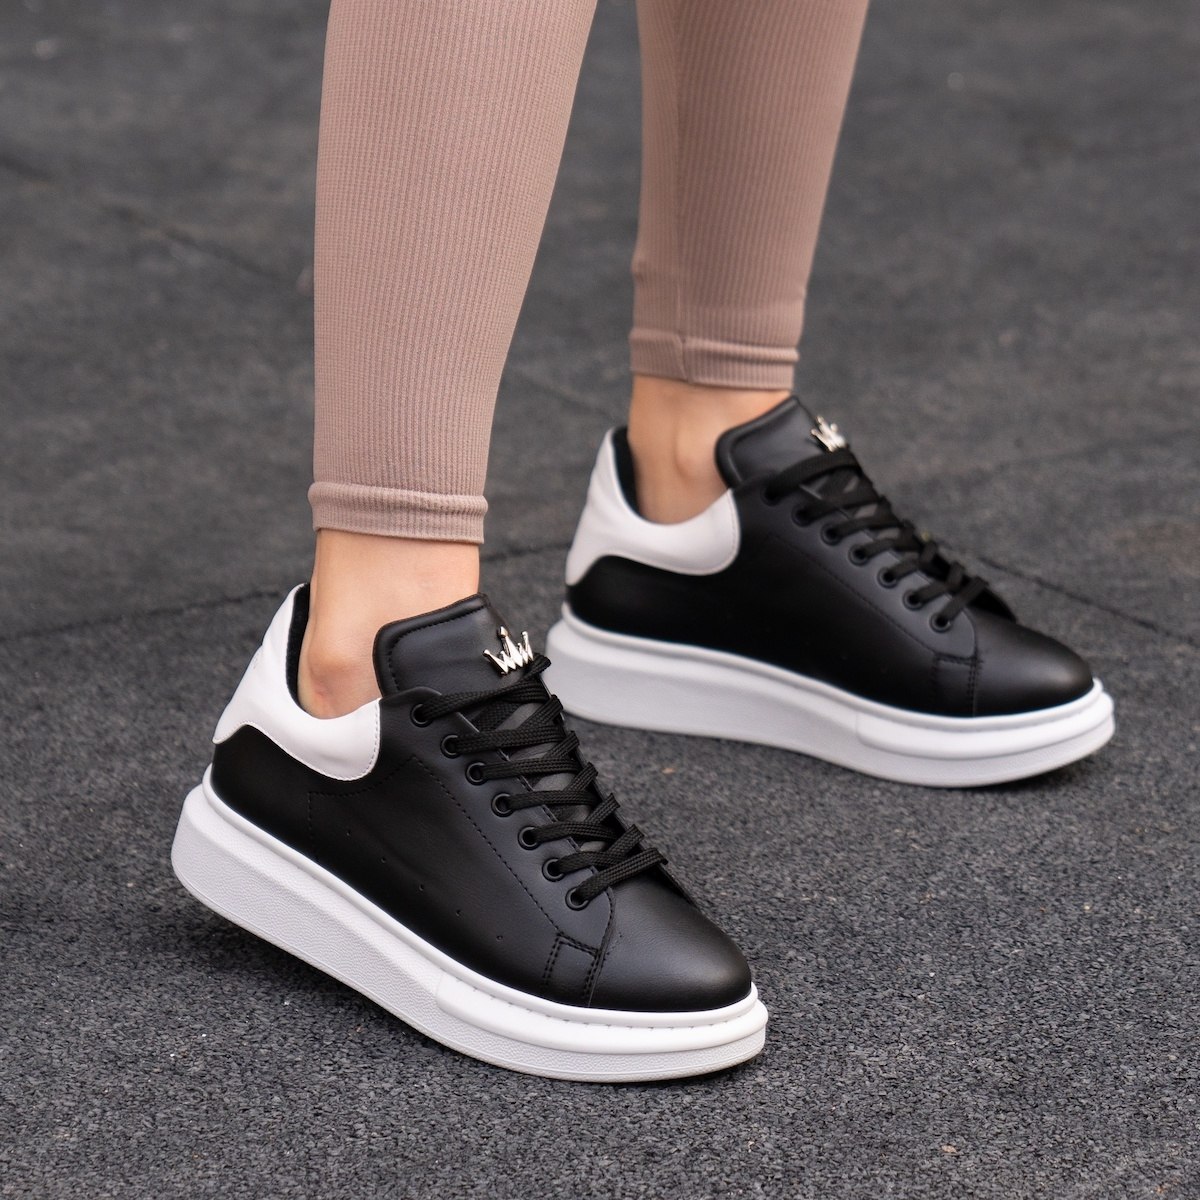 Zapatillas para Mujer de Suela Alta con Corona en Negro y Blanco | Martin Valen